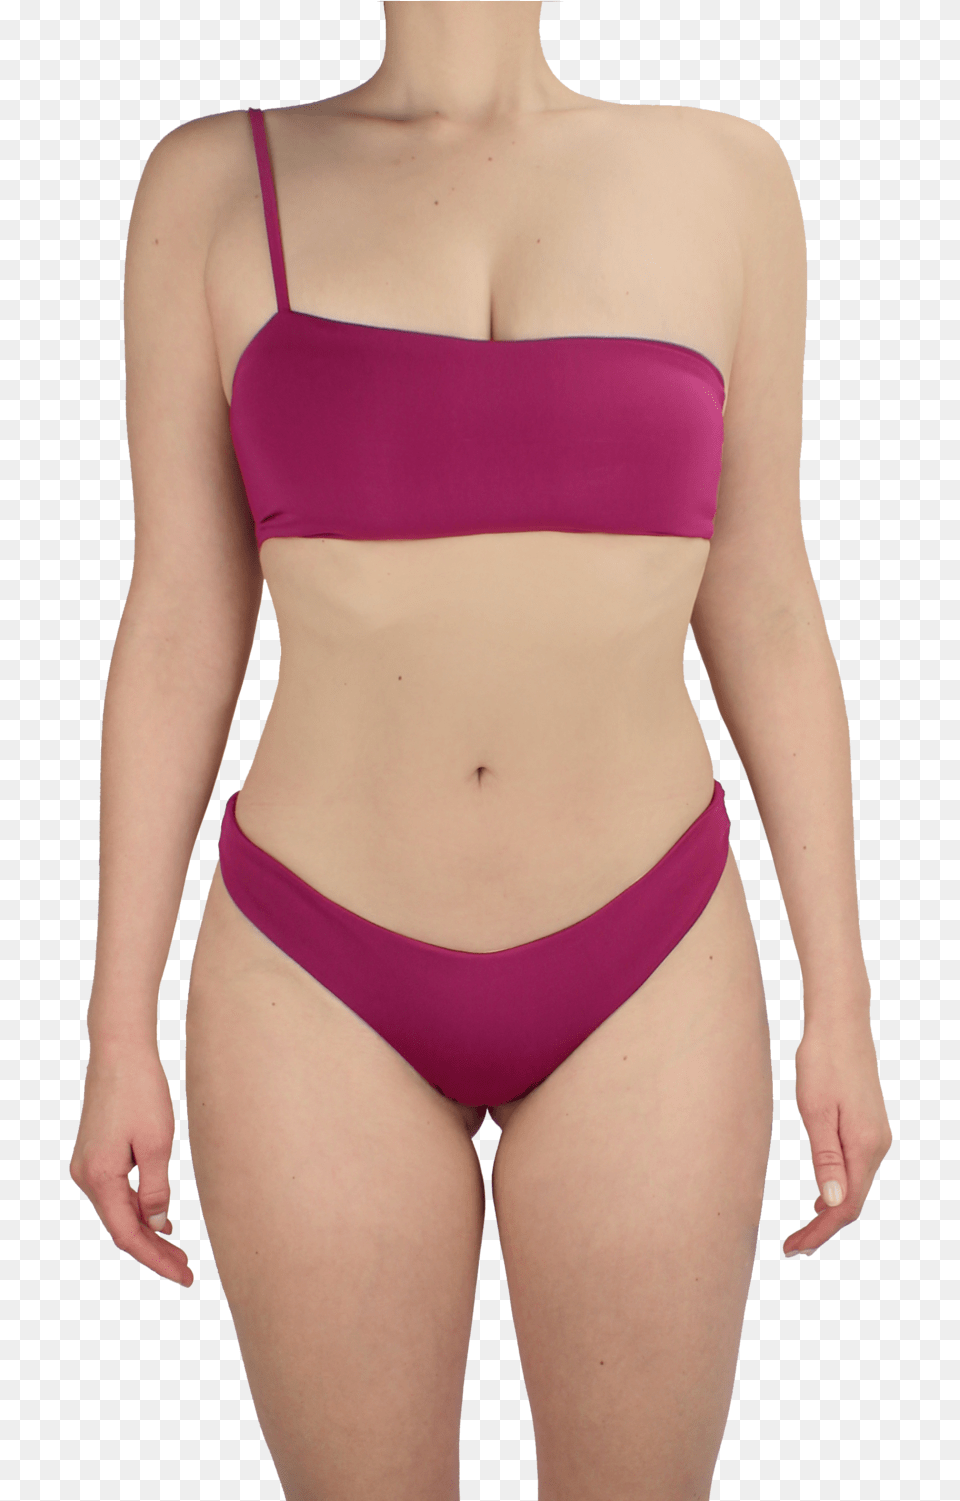 The Bikini Project Bikini Top Australian Bikini Swimsuit Bottom, Adult, Swimwear, Person, Woman Png